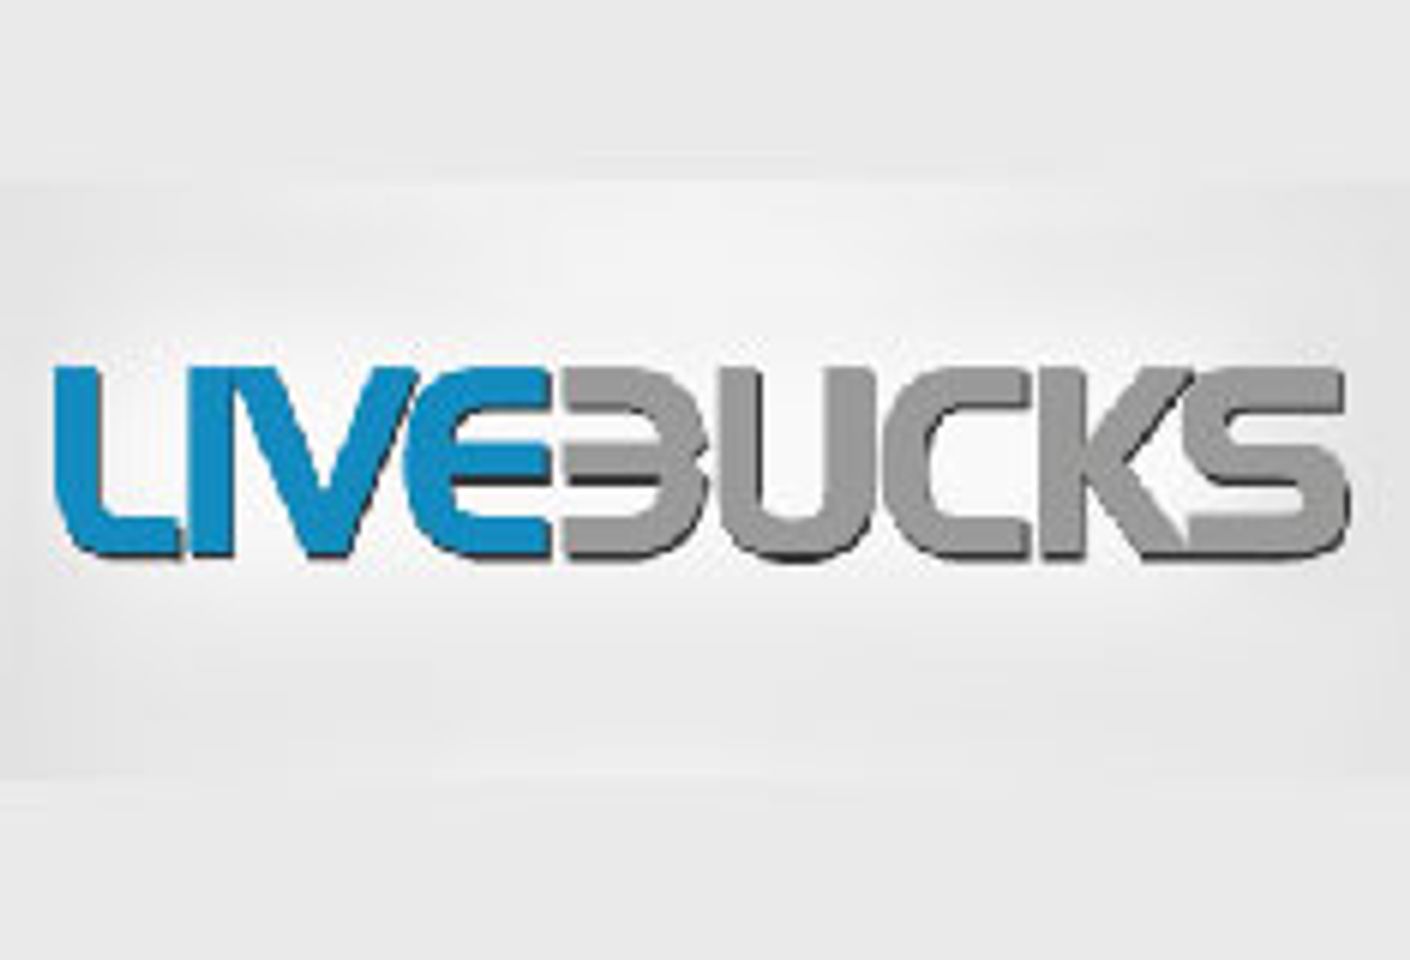 LiveBucks Launches Asian Cam Site AznCams.com